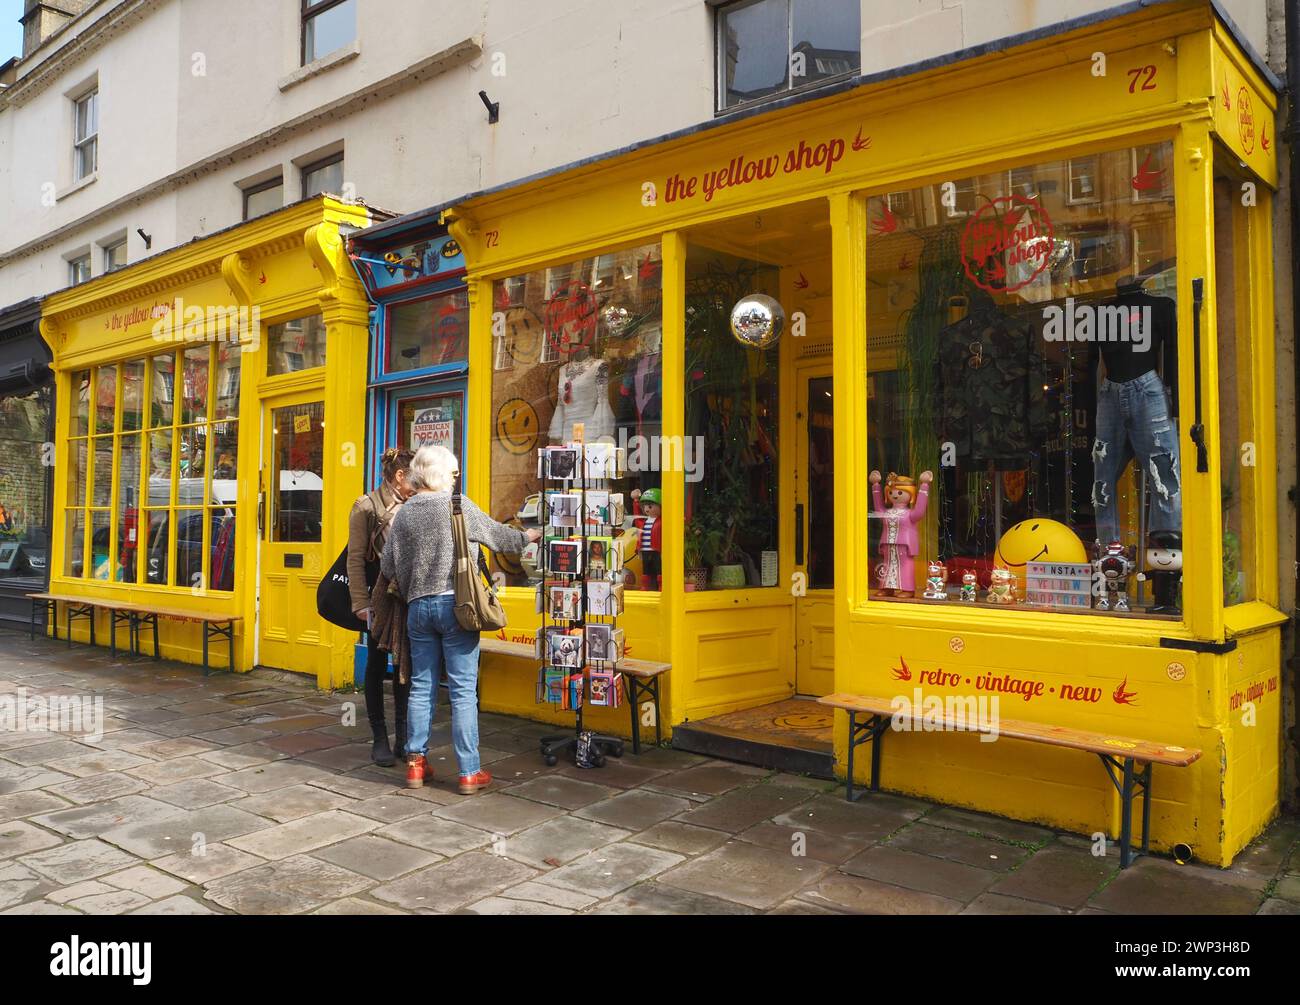 Ladenfront des Yellow Shop, einem unabhängigen Händler, der sich auf Vintage- und Retro-Kleidung und Accessoires spezialisiert hat. Walcot Street, Bath, Somerset. Stockfoto